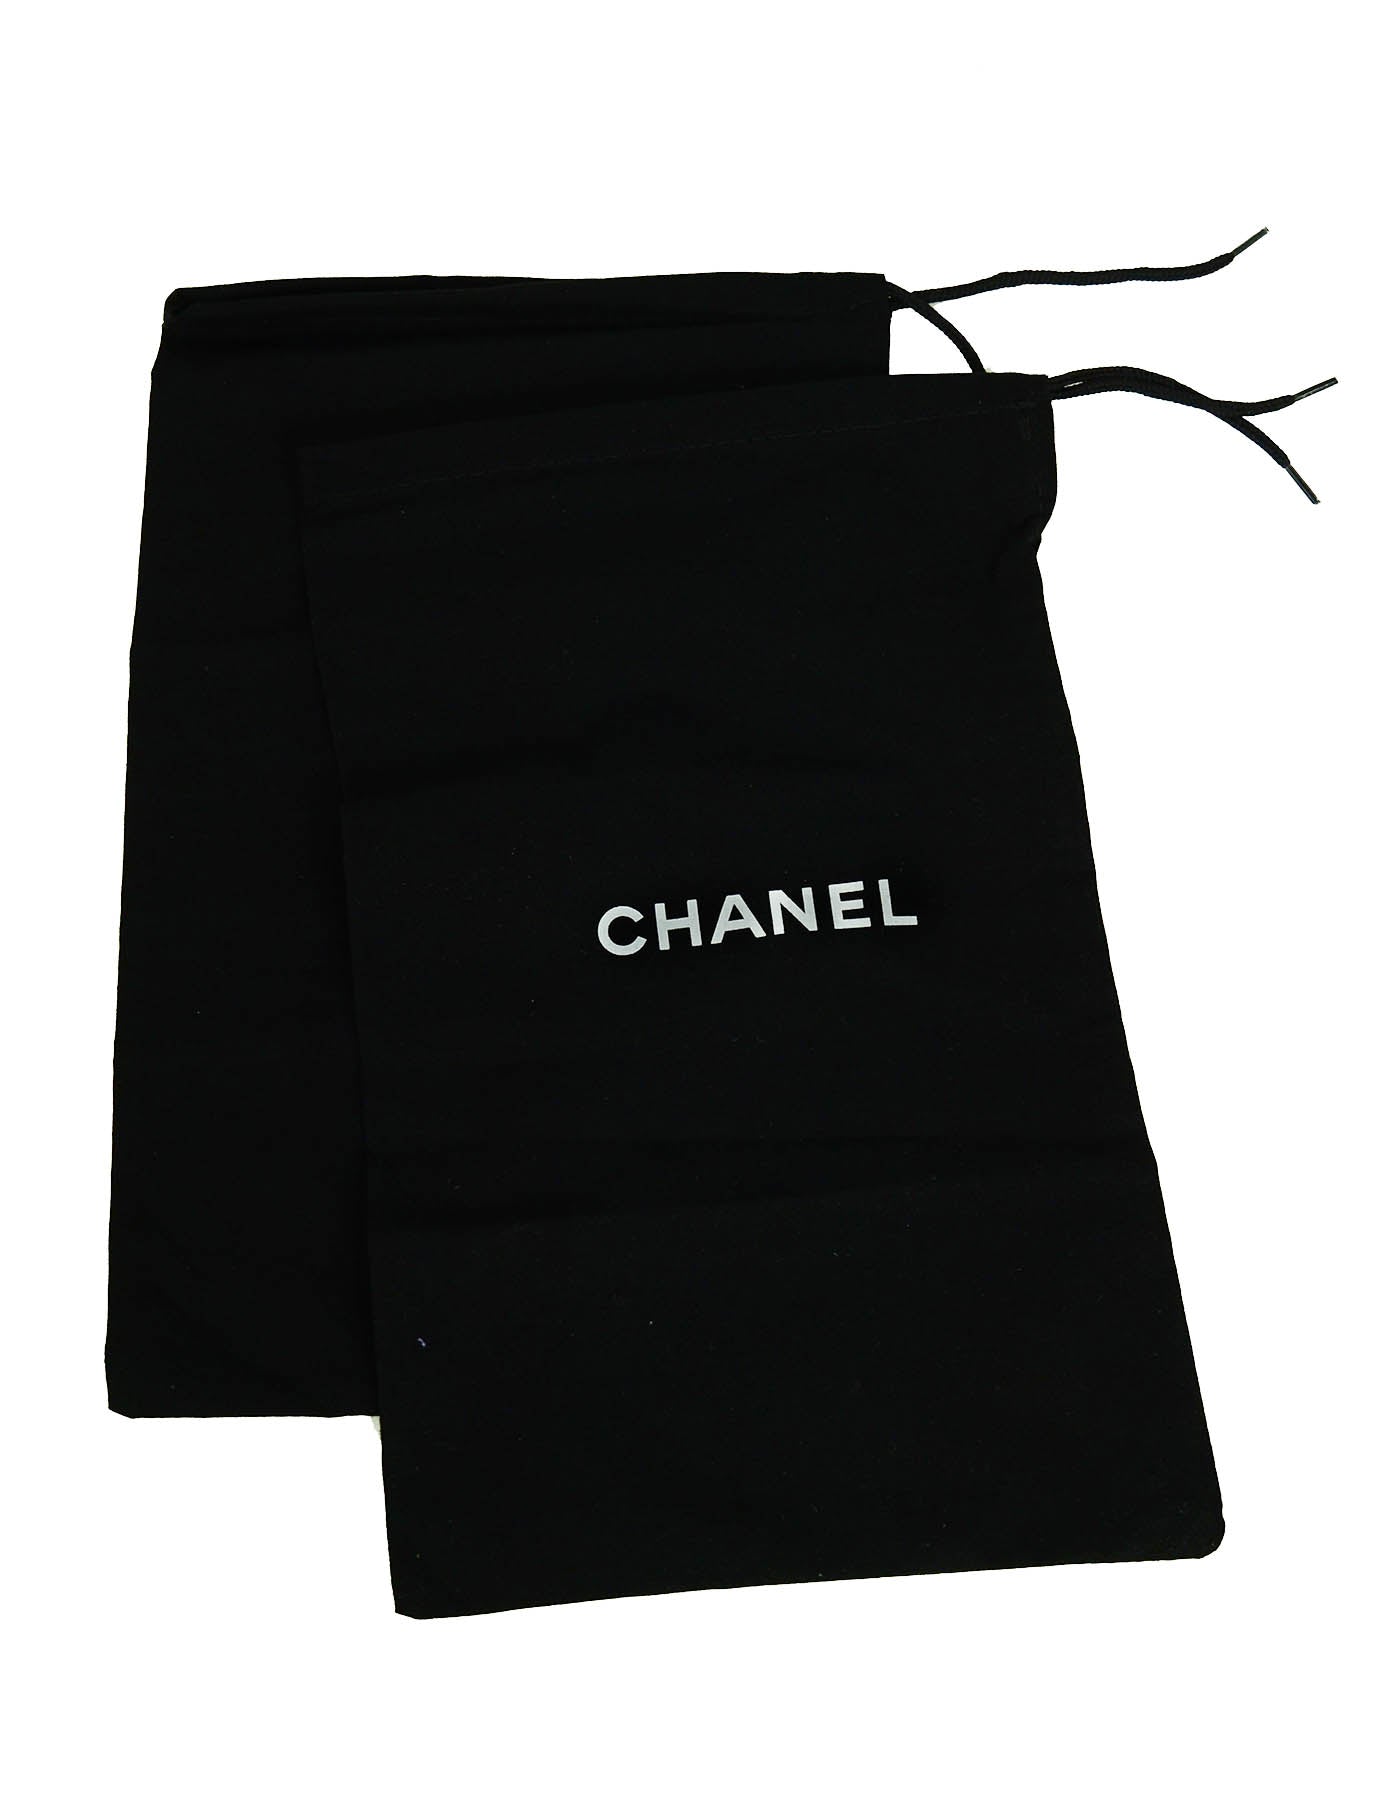 Chanel 2020 Black/White Cambon Logo Print Espadrilles sz 39